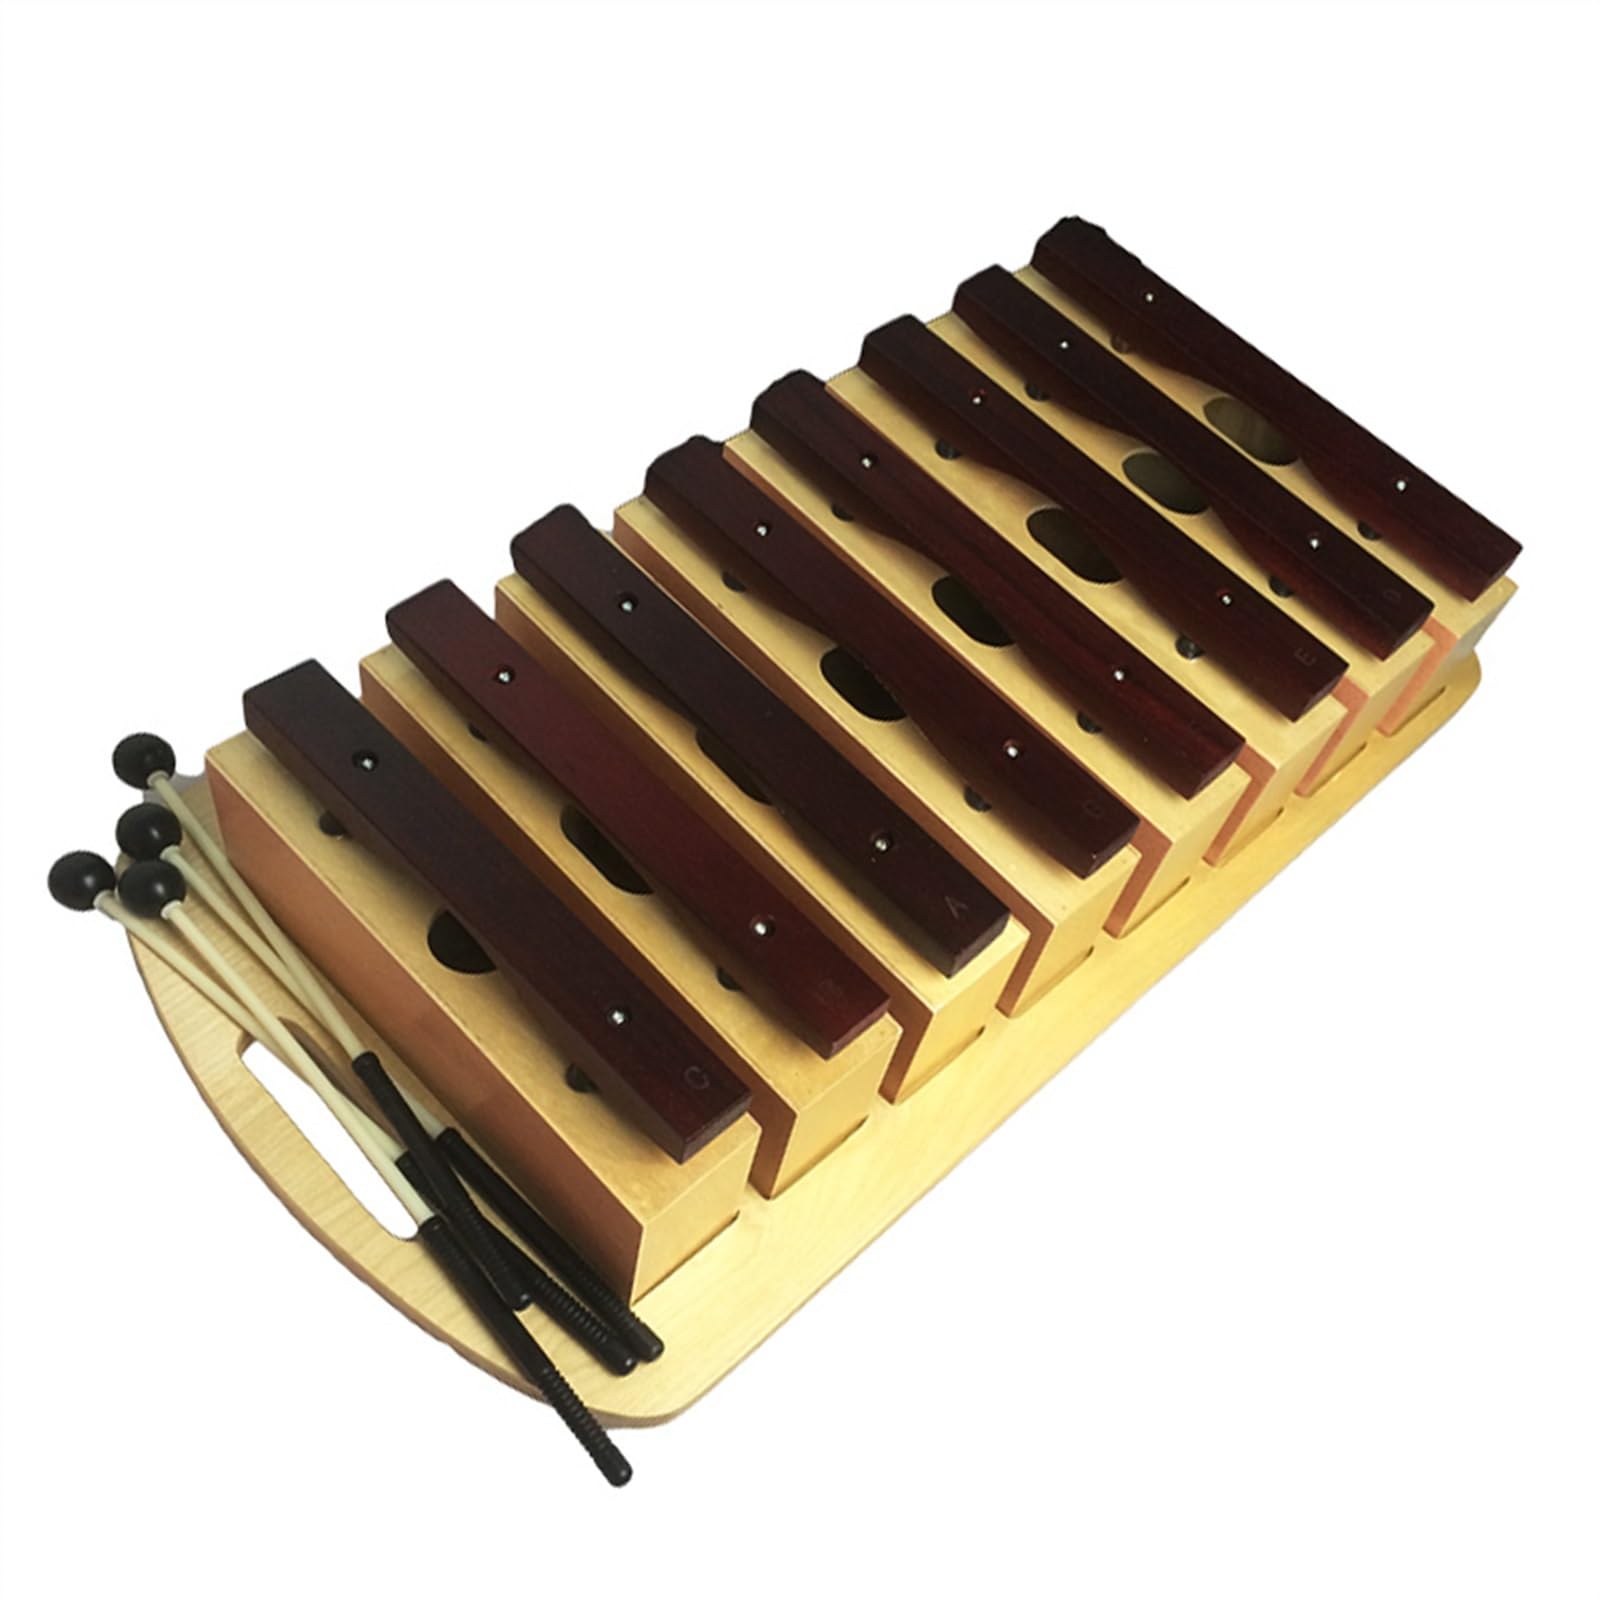 Großes handgeklopftes Glockenspiel-Schlaginstrument aus Redwood mit 8 Tönen und Ziegelstein vom Echo-Typ Glockenspiel Set